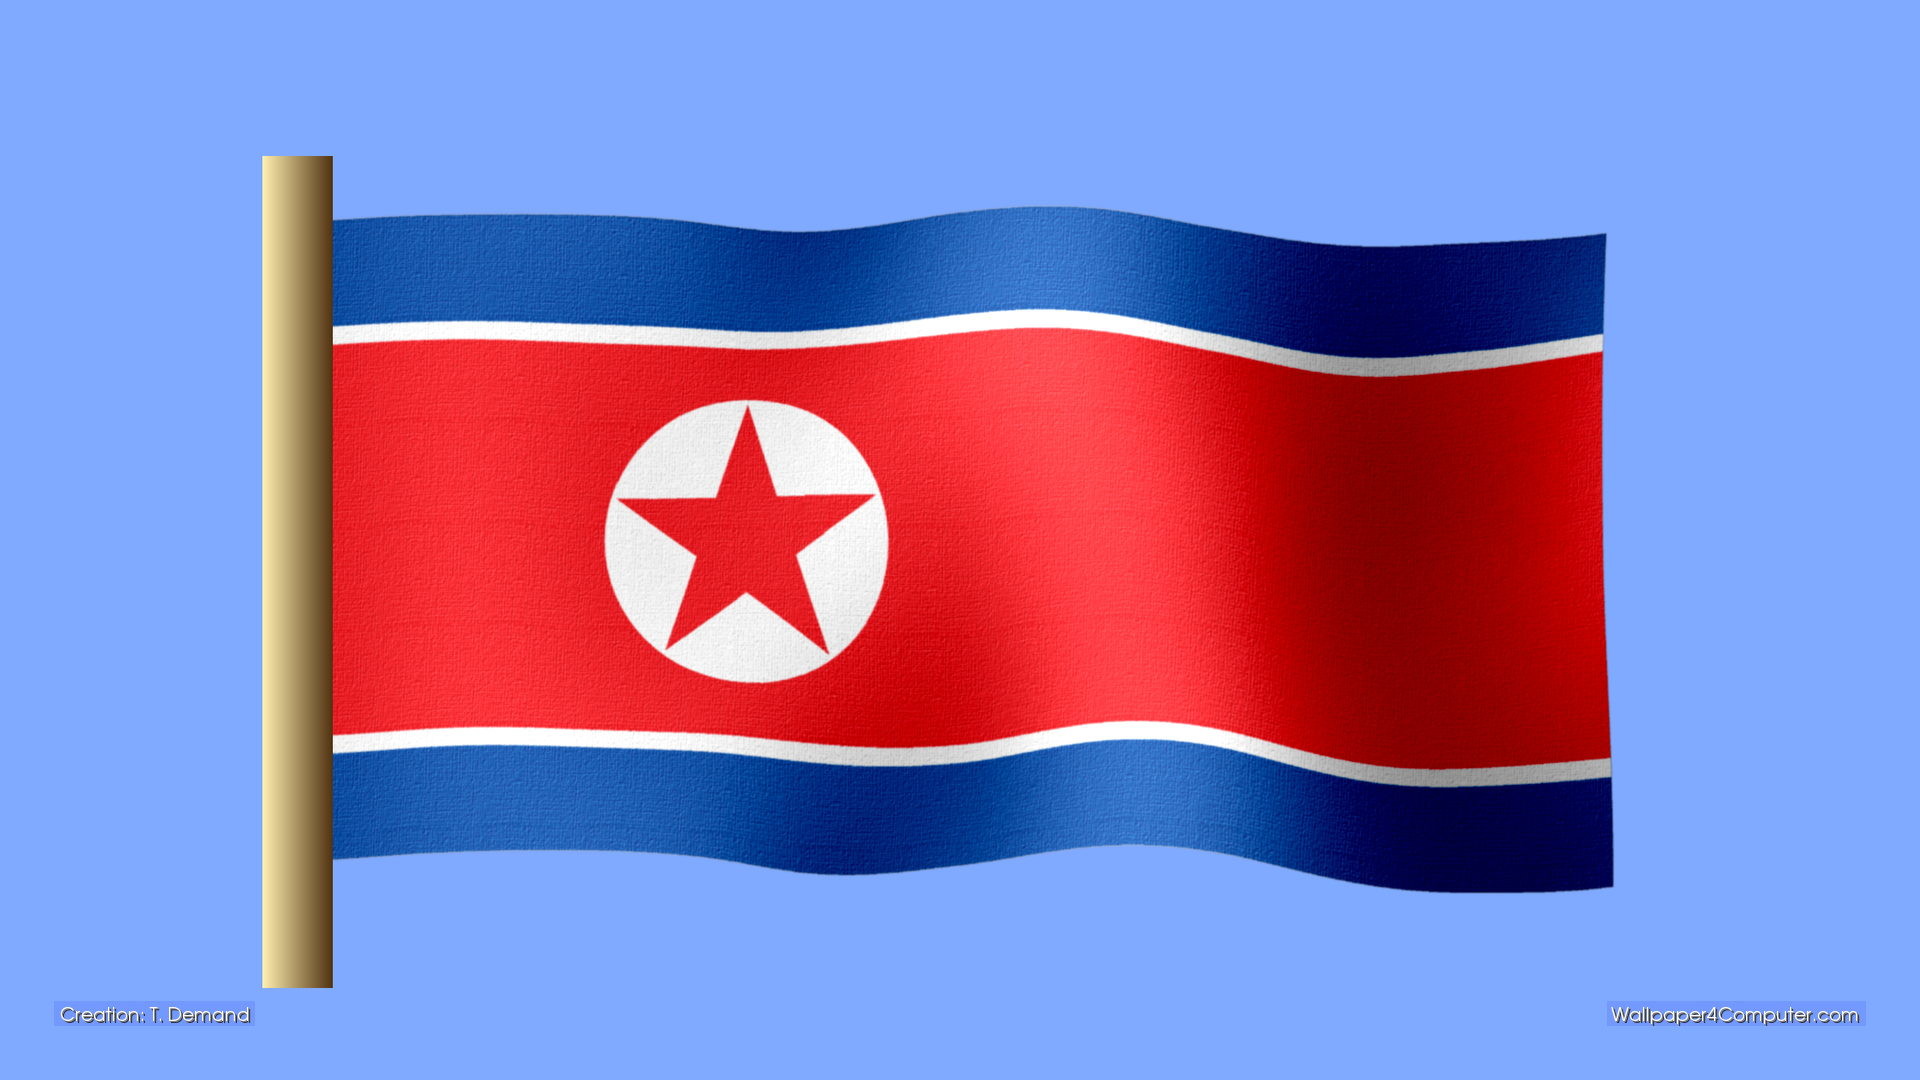 Wallpaper for Computer – North Korean flag desktop wallpaper – 1920 x 1080  pixels